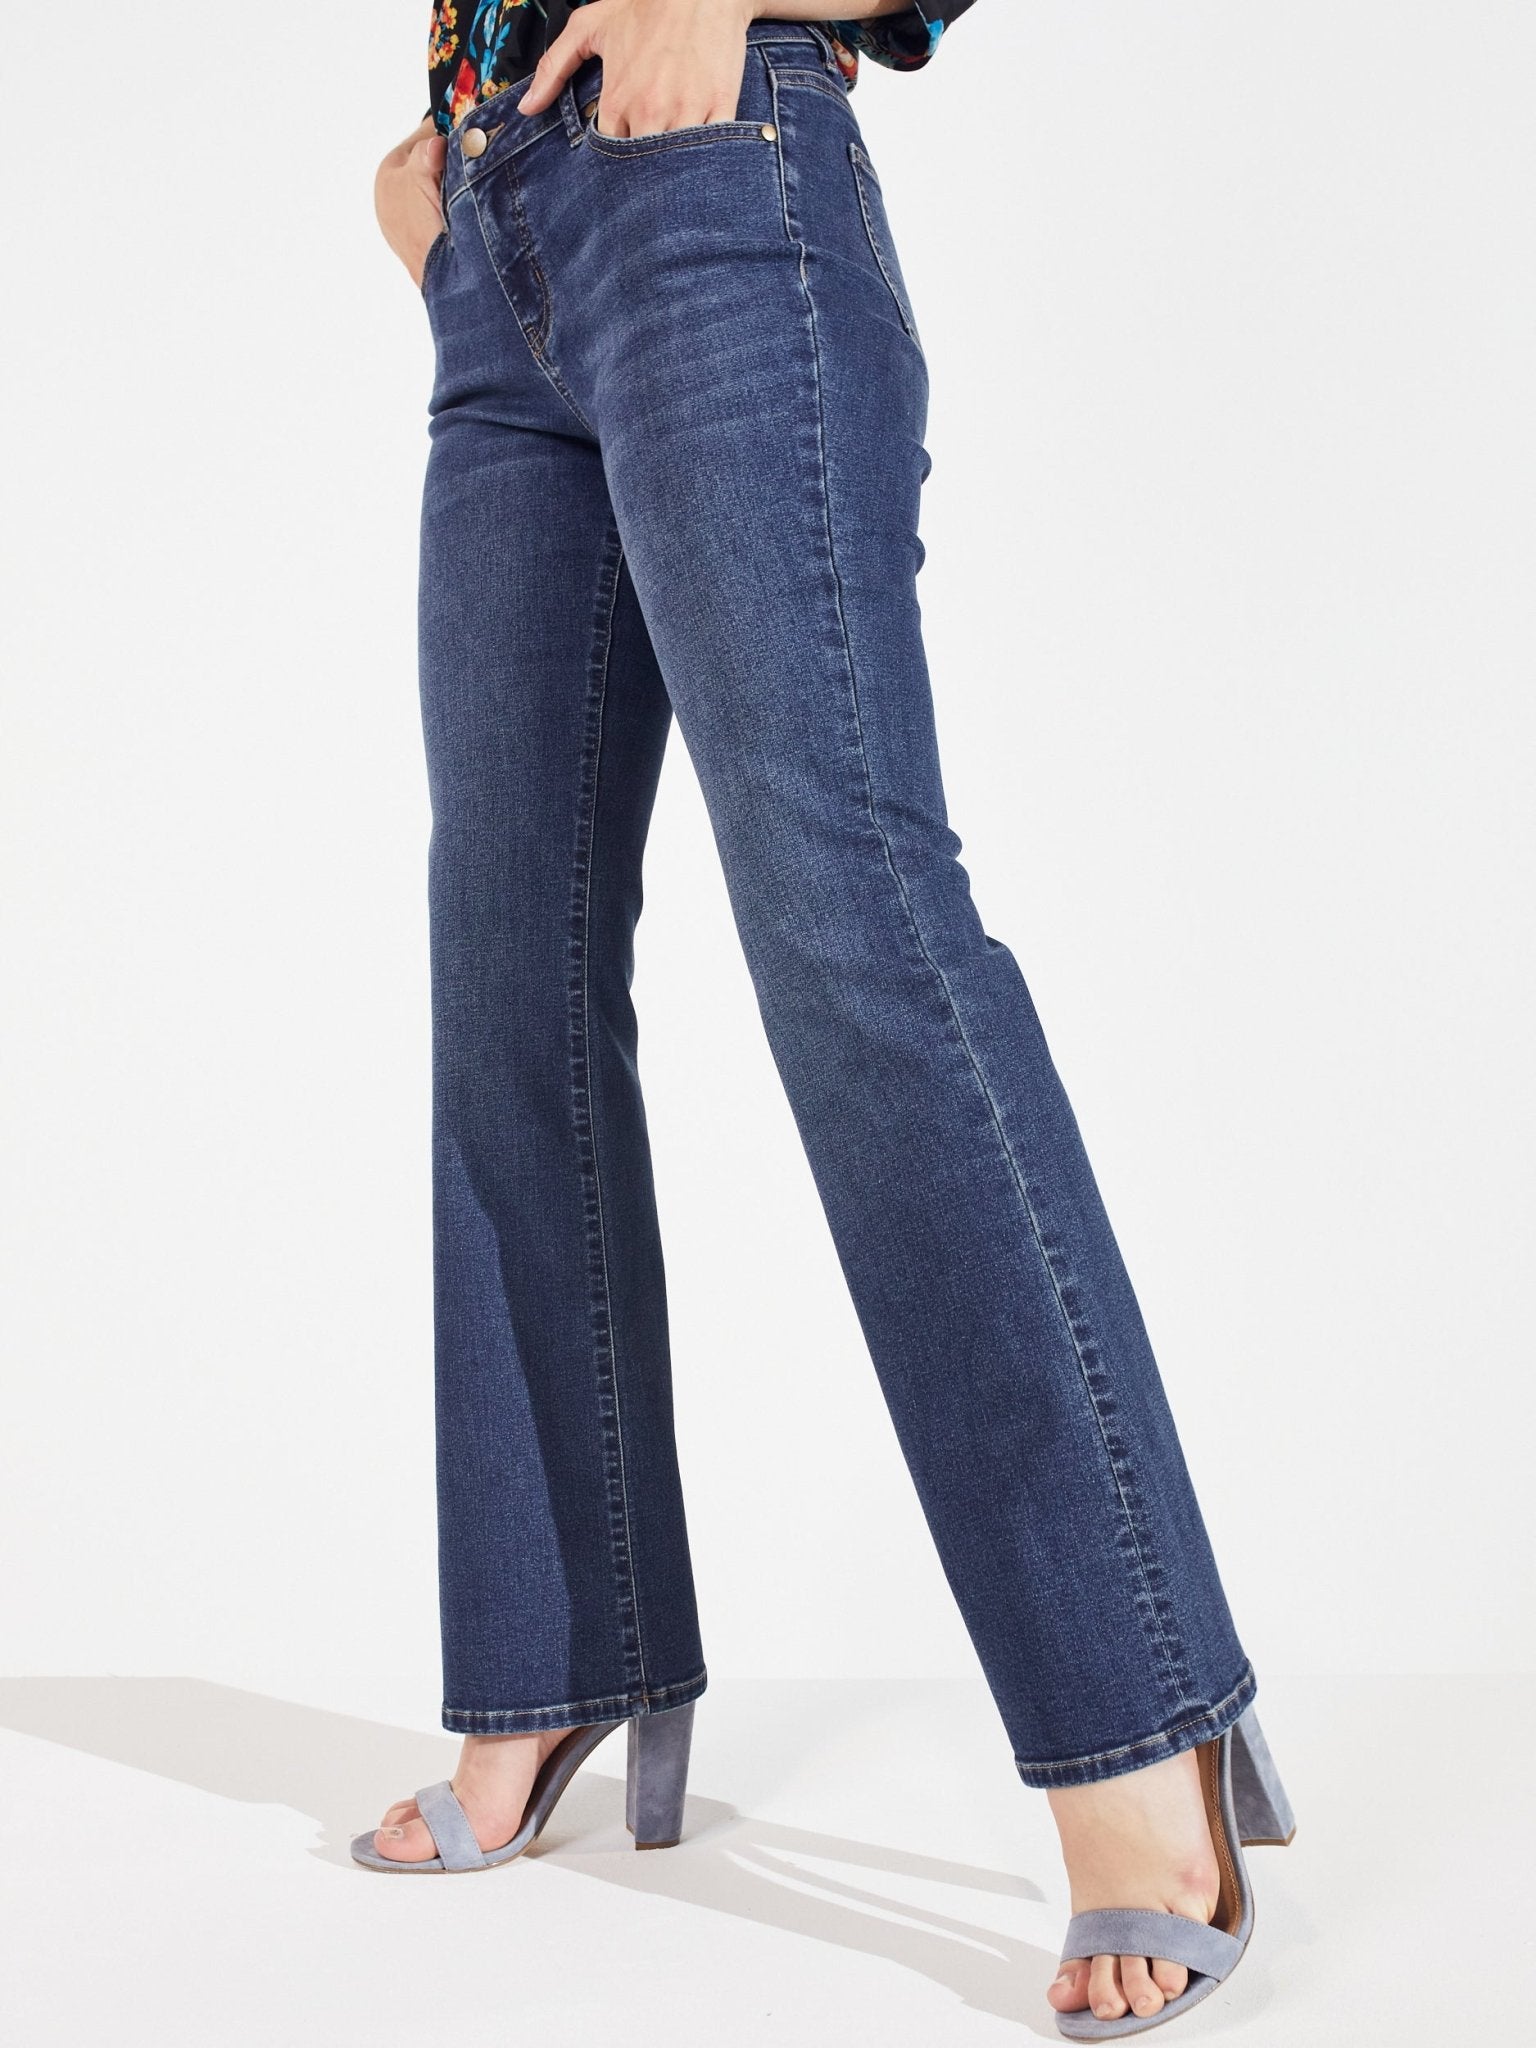 SHEIN PETITE Medium Stretch Bootcut Jeans